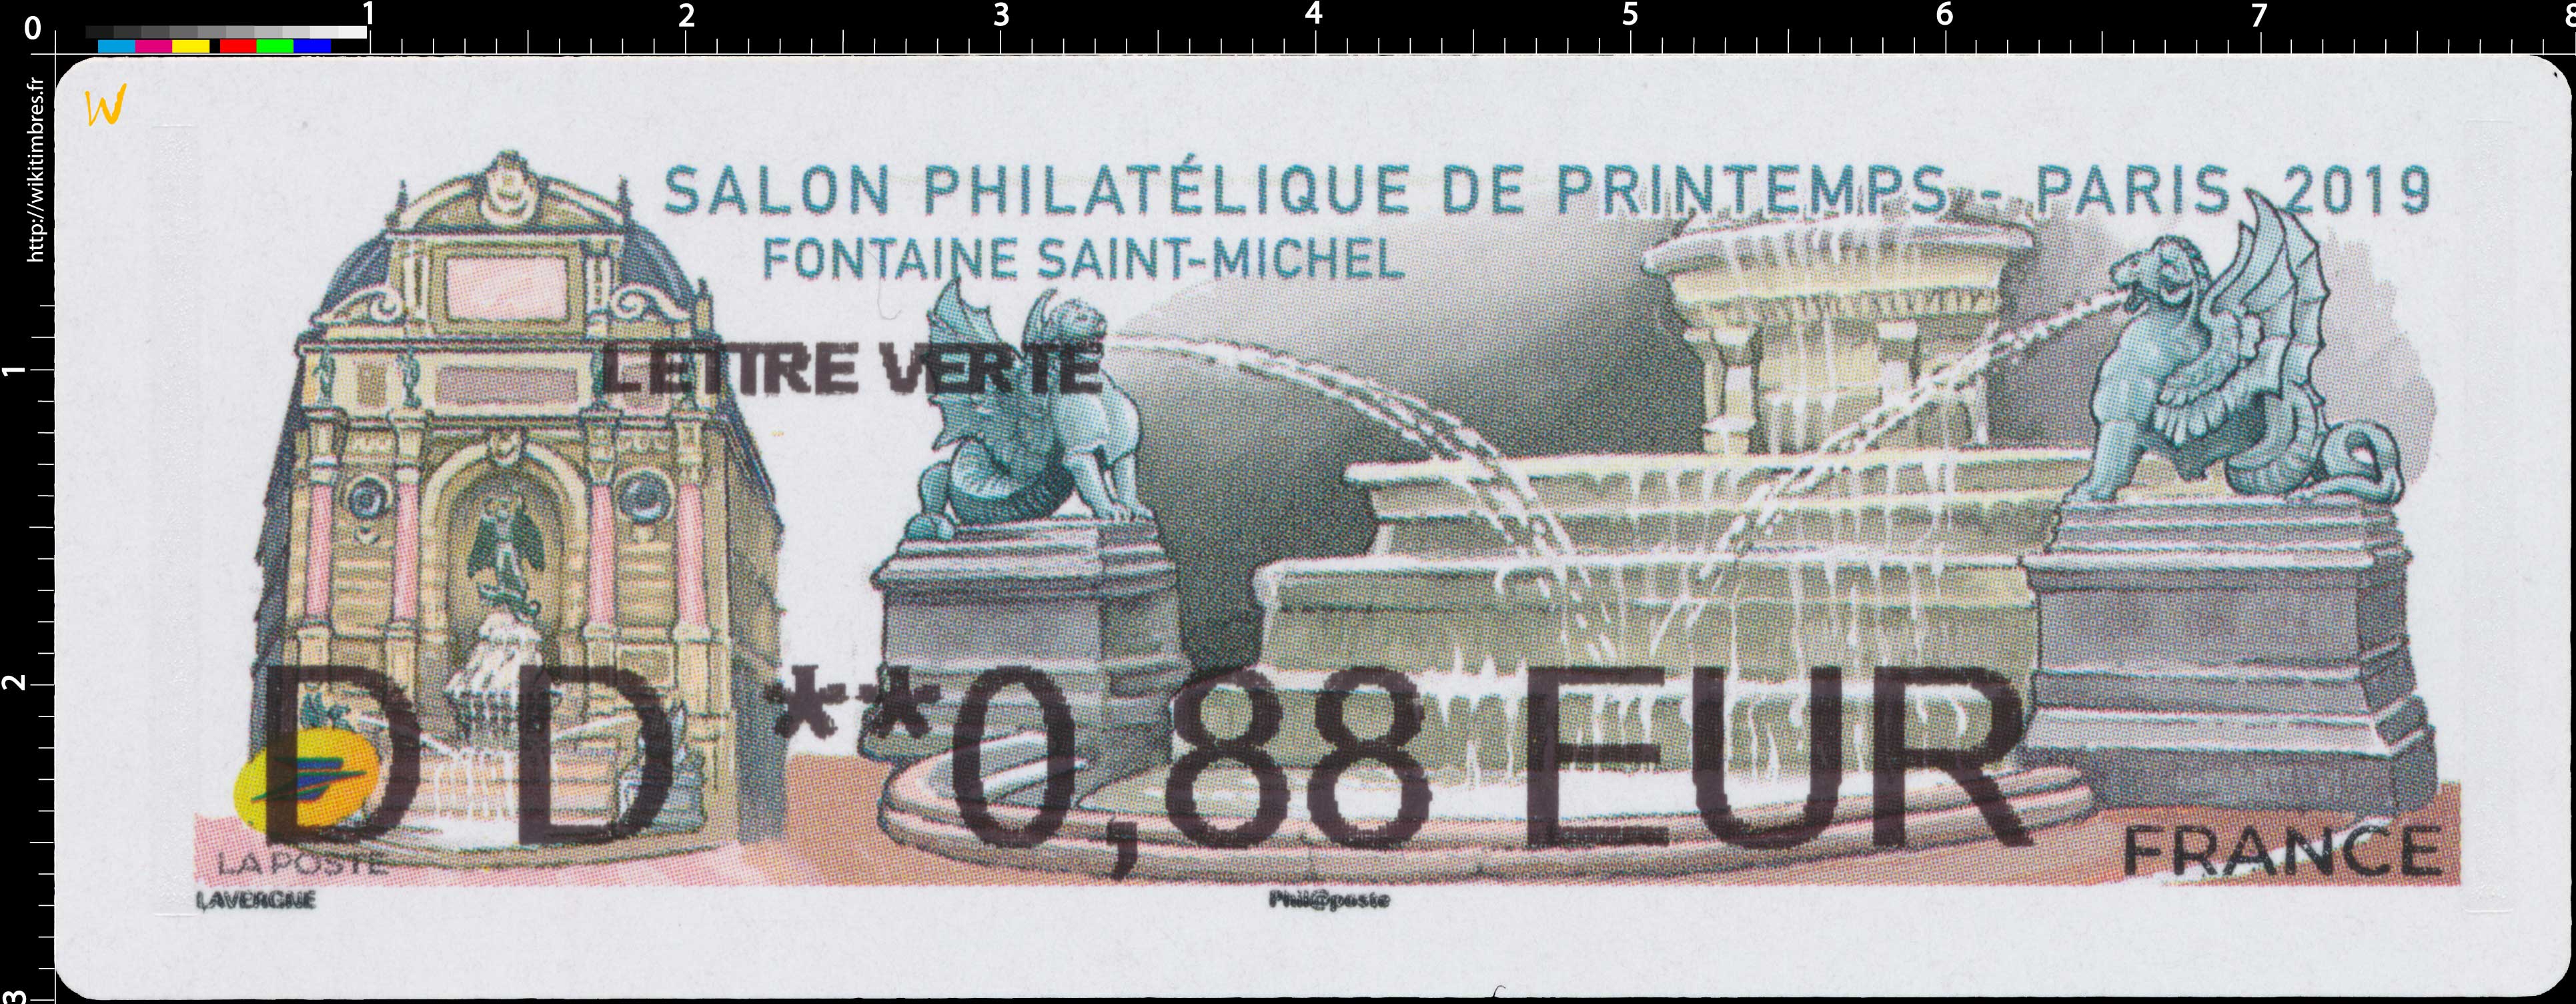 2019 Salon philatélique de printemps - Fontaine Saint-Michel - Paris